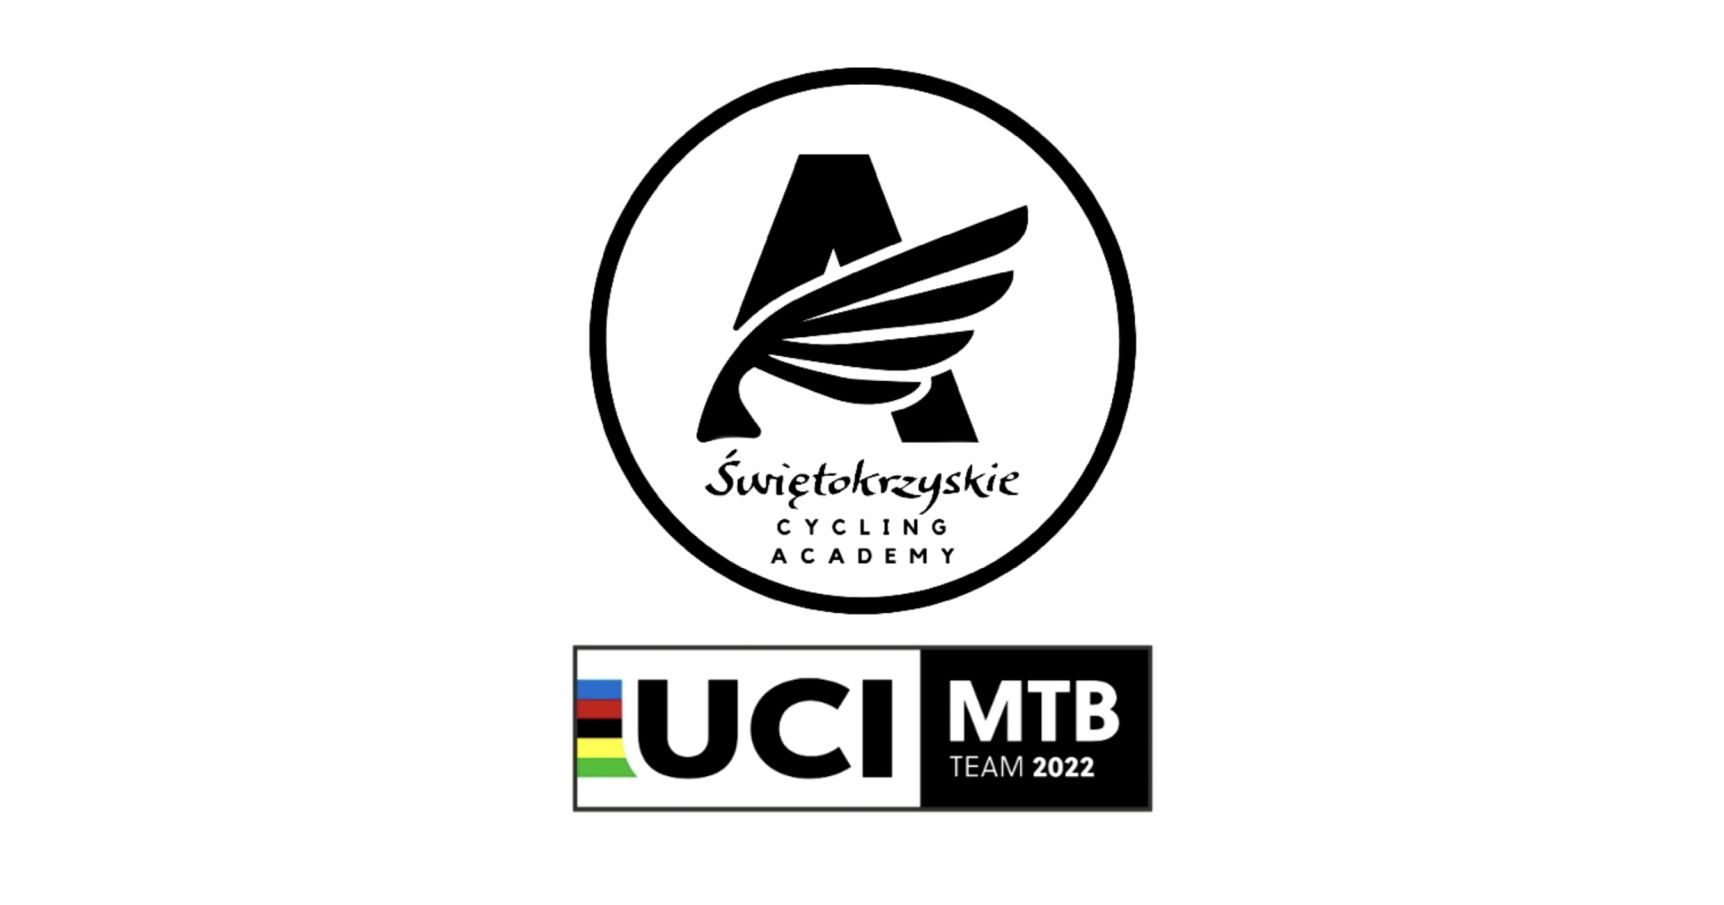 świętokrzyskie cycling academy uci mtb team logo